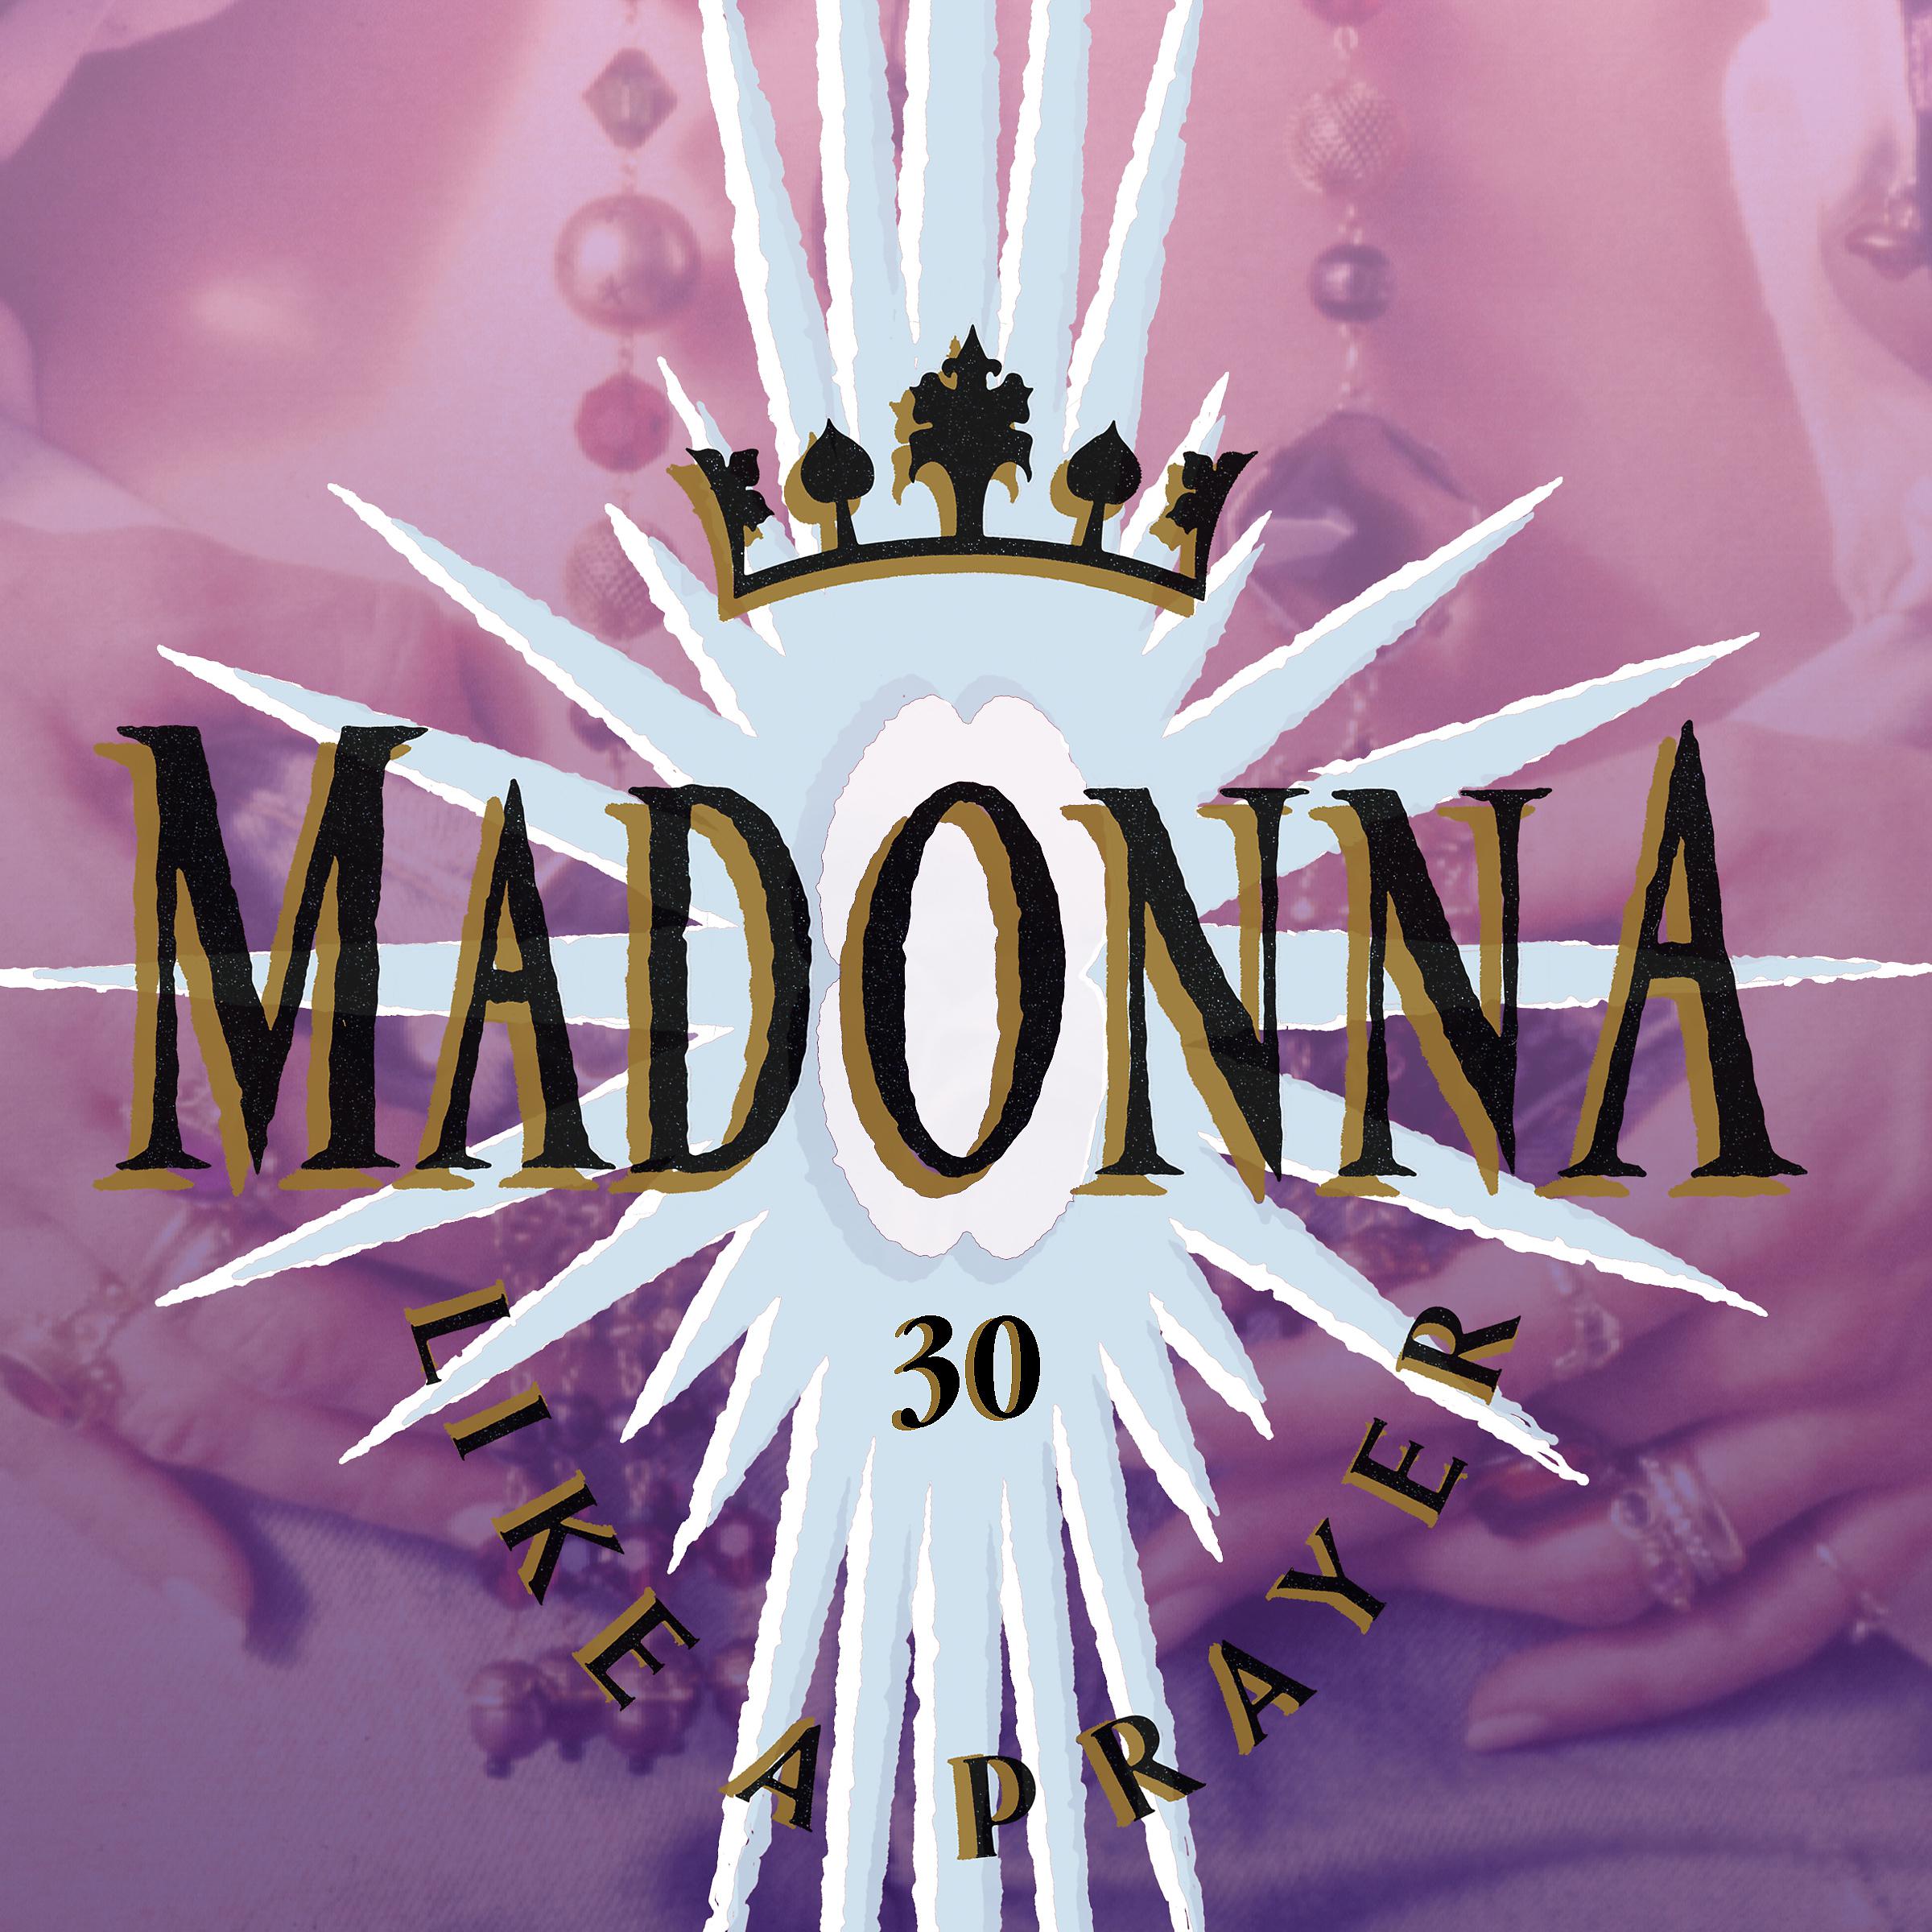 I wanna sing like madonna. Madonna 1989 like a Prayer. Like a Prayer album. Like a Prayer обложка. Madonna like a Prayer album.